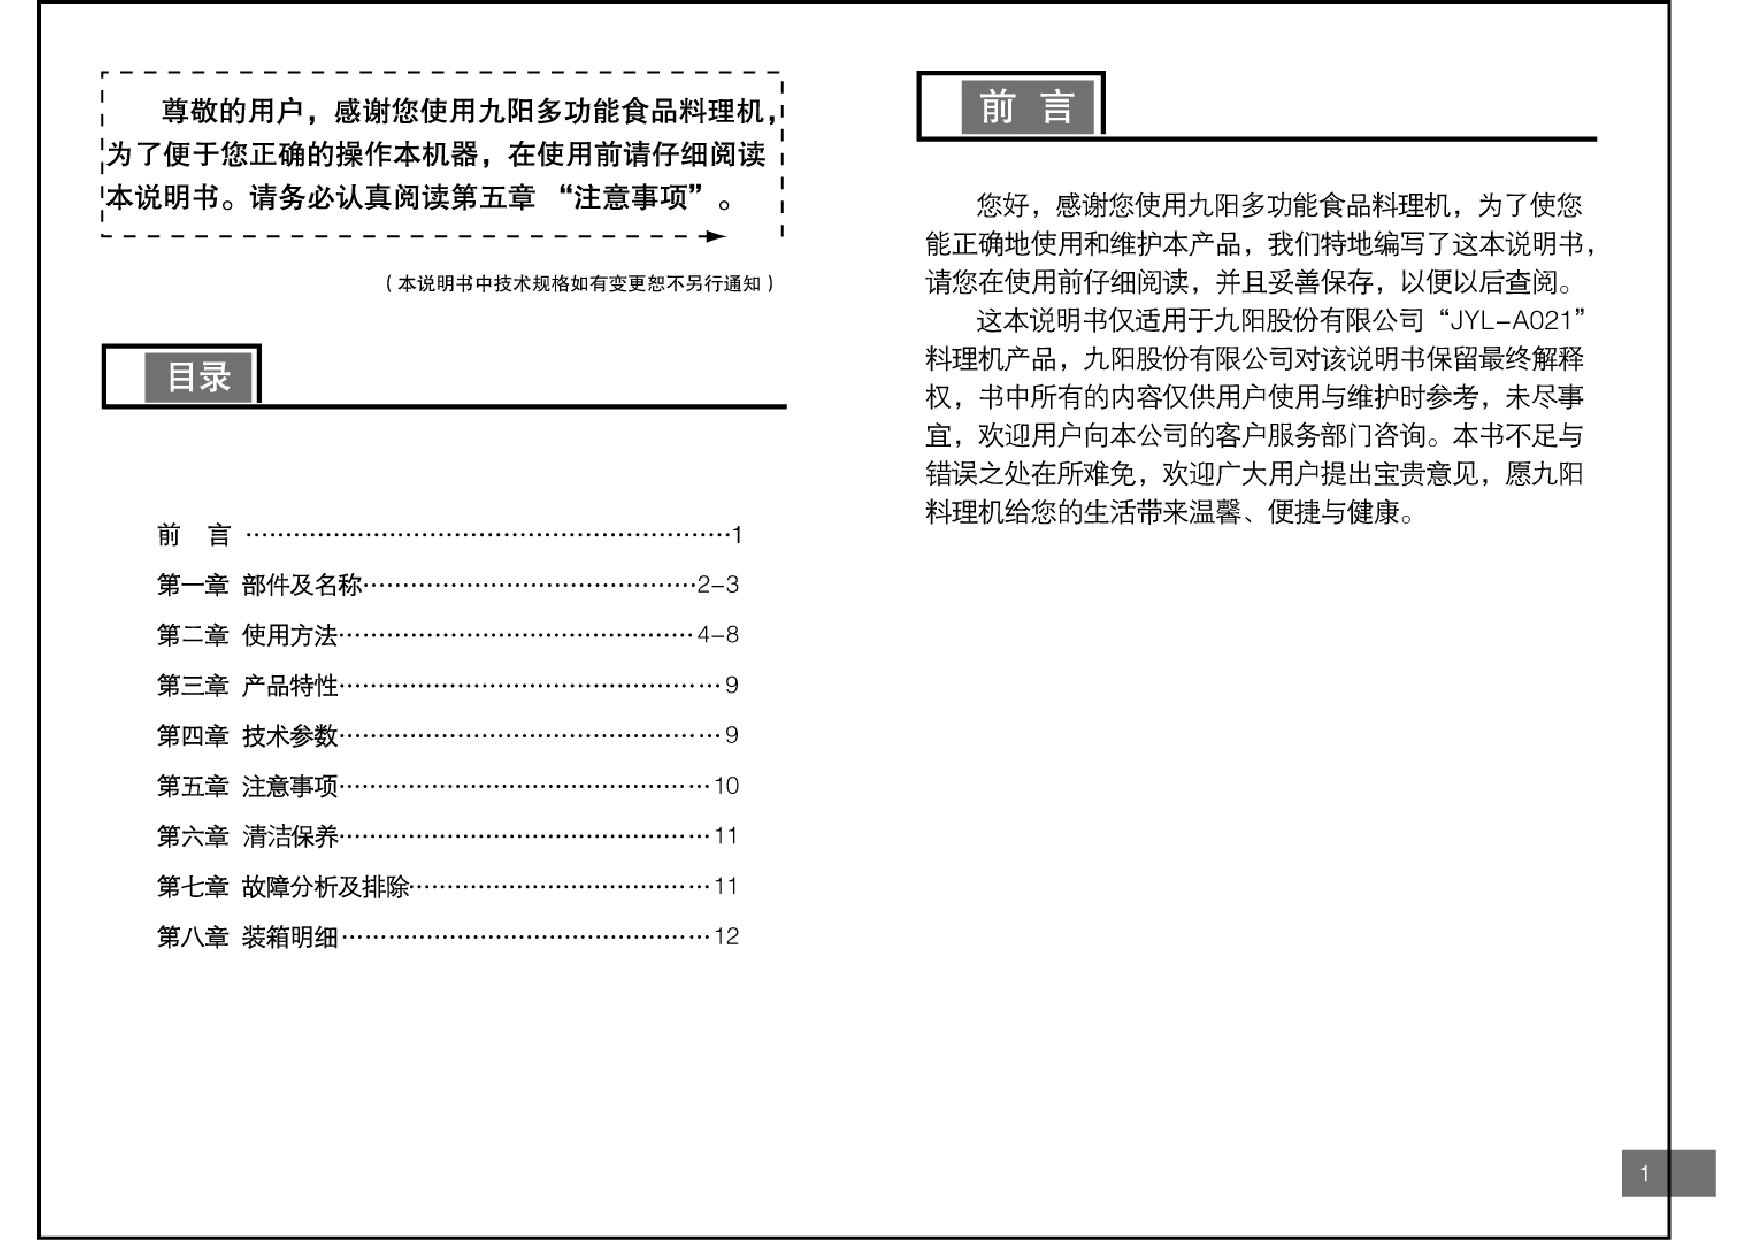 九阳 Joyyoung JYL-A021 使用说明书 第1页